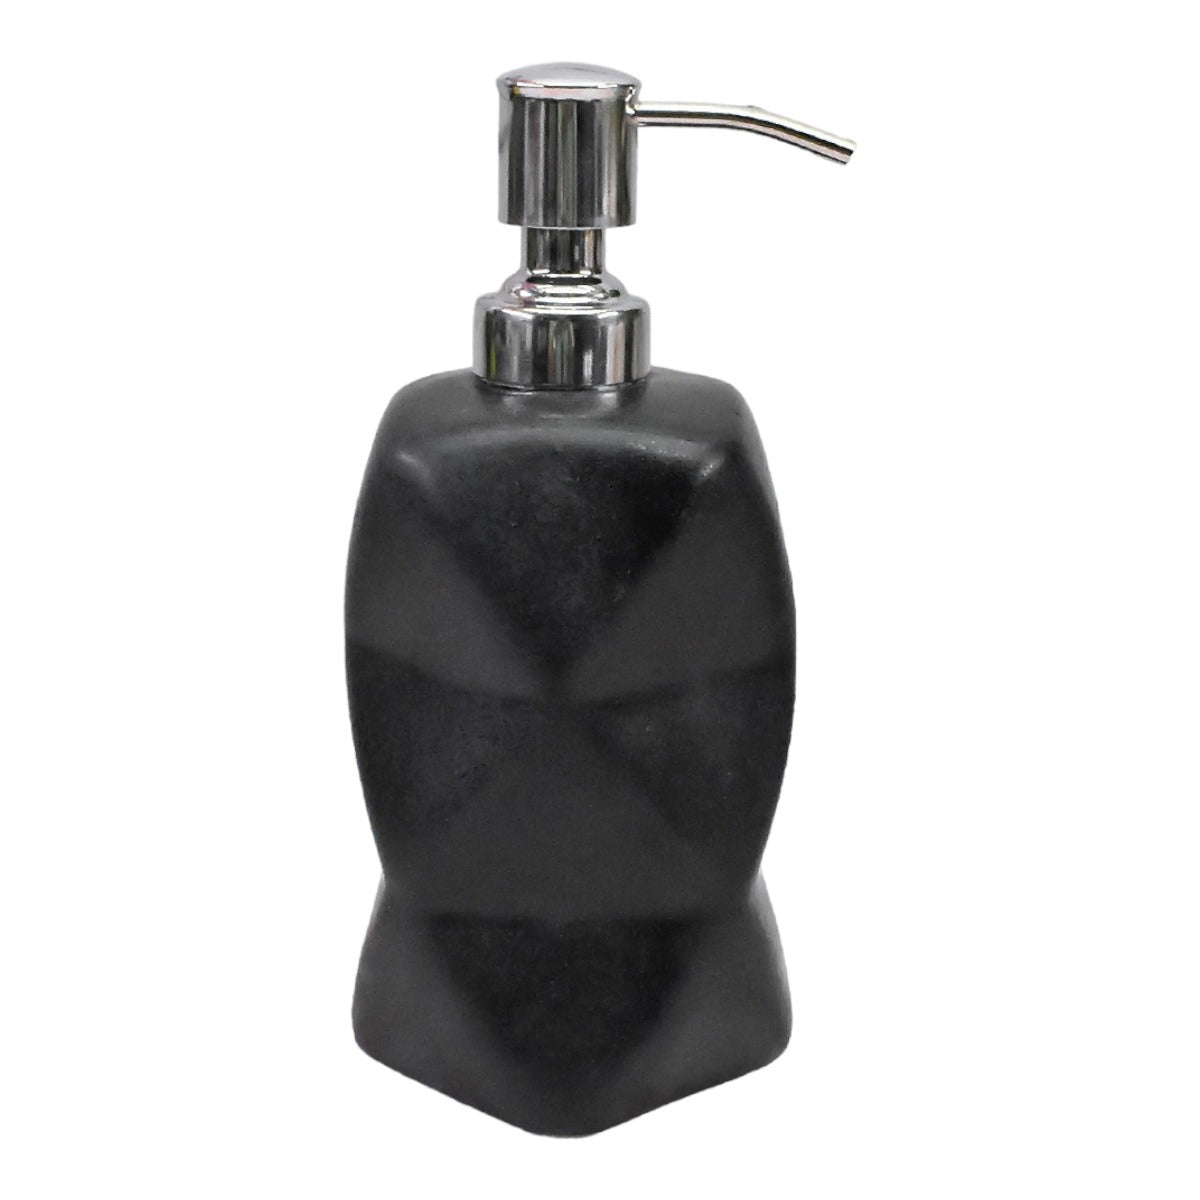 Kookee Ceramic Soap Dispenser for Bathroom handwash, refillable pump bottle for Kitchen hand wash basin, Set of 1, Black (9685)